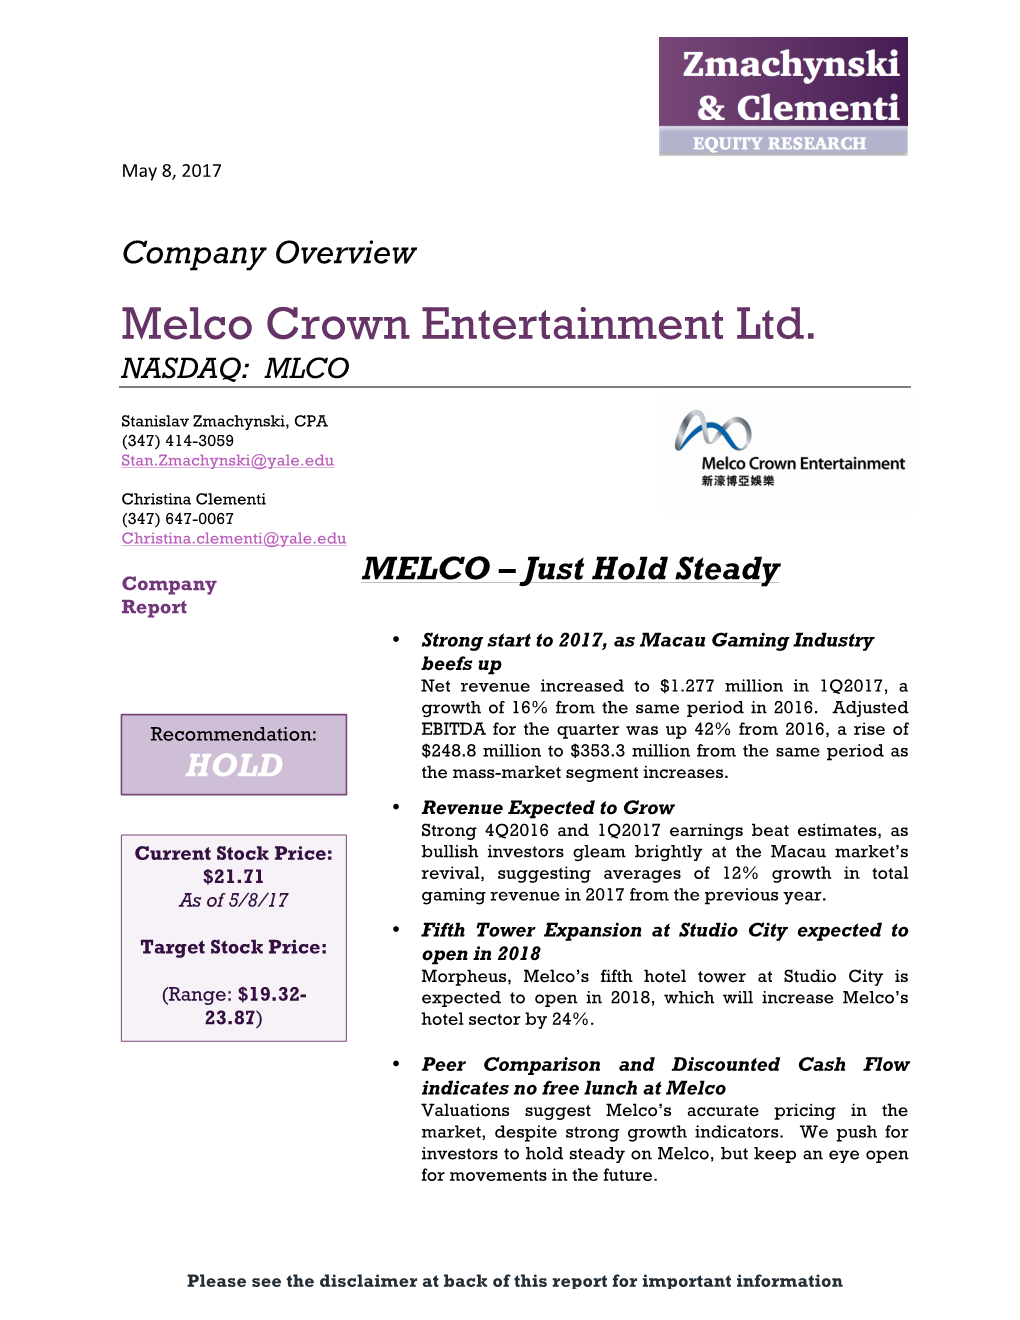 Melco Crown Entertainment Ltd. NASDAQ: MLCO